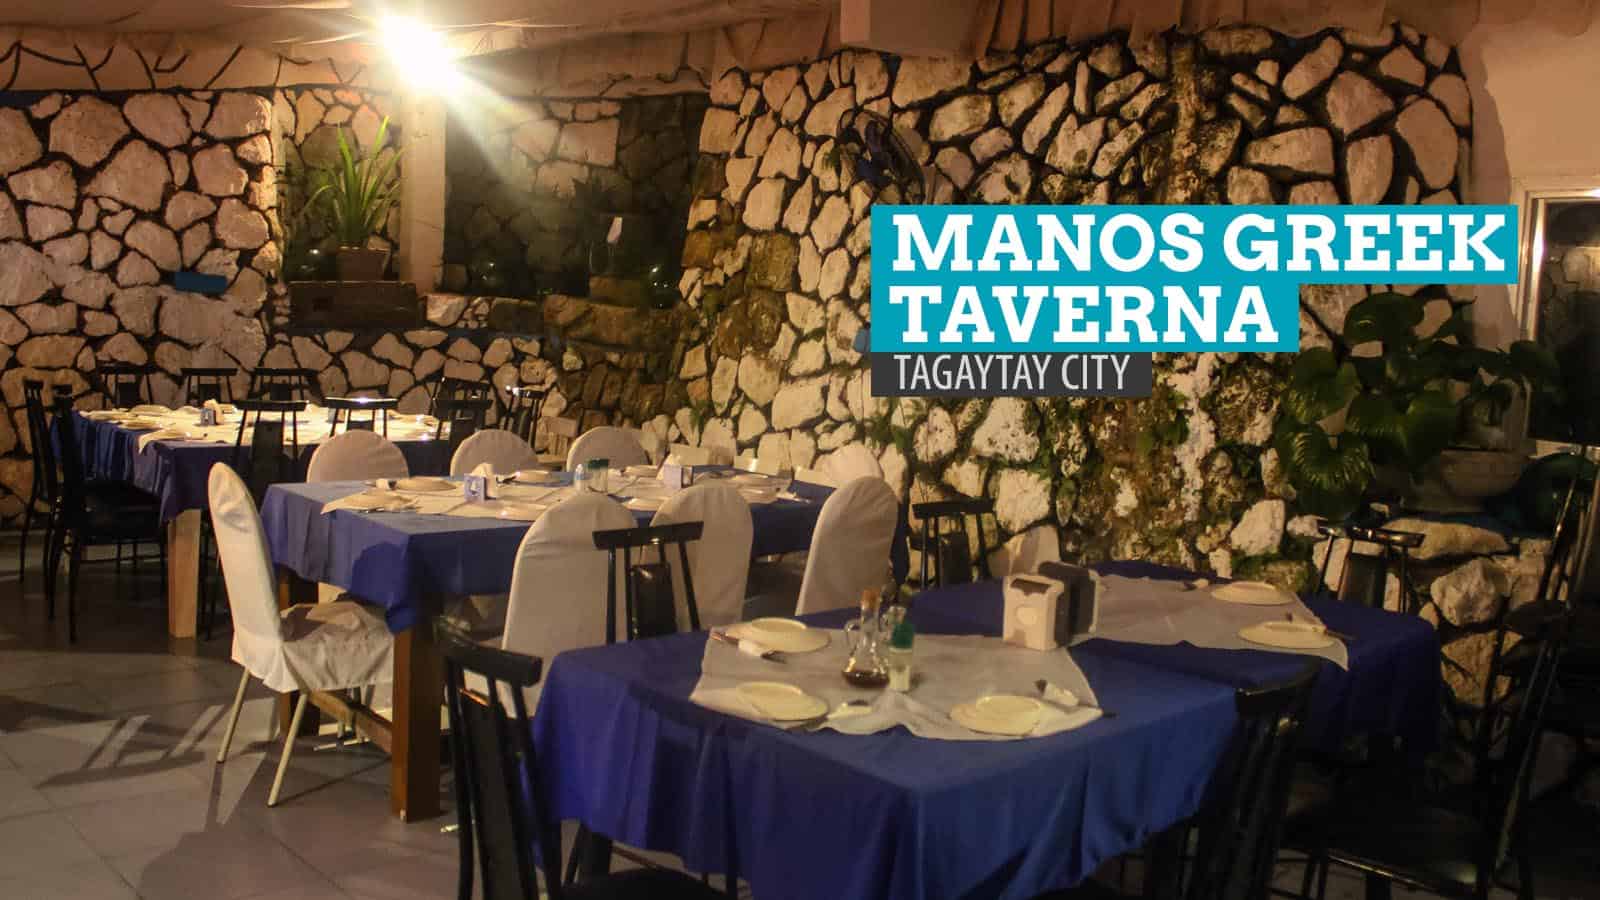 Manos希腊酒馆:菲律宾塔加泰市的美食之处